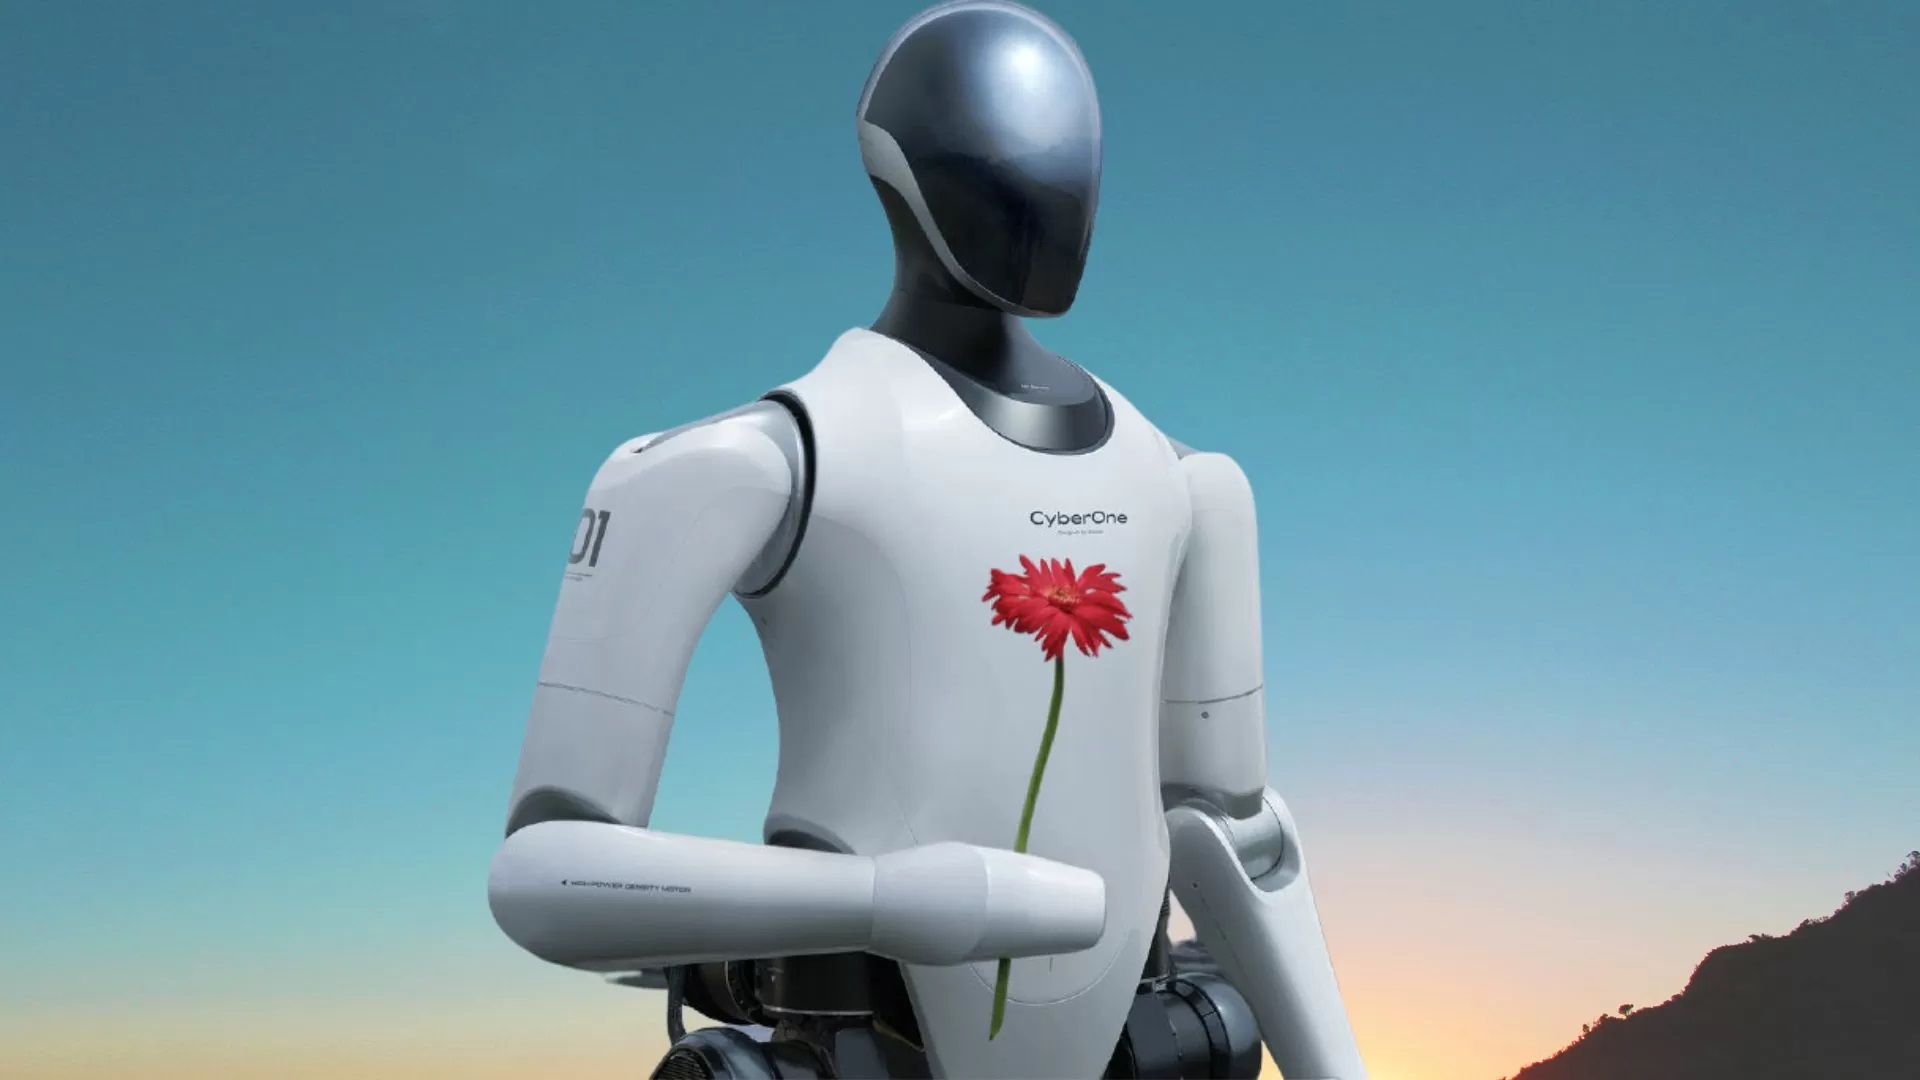 Xiaomi präsentierte einen Roboter-Humanoiden CyberOne: er kann kommunizieren, Emotionen erkennen und Blumen schenken